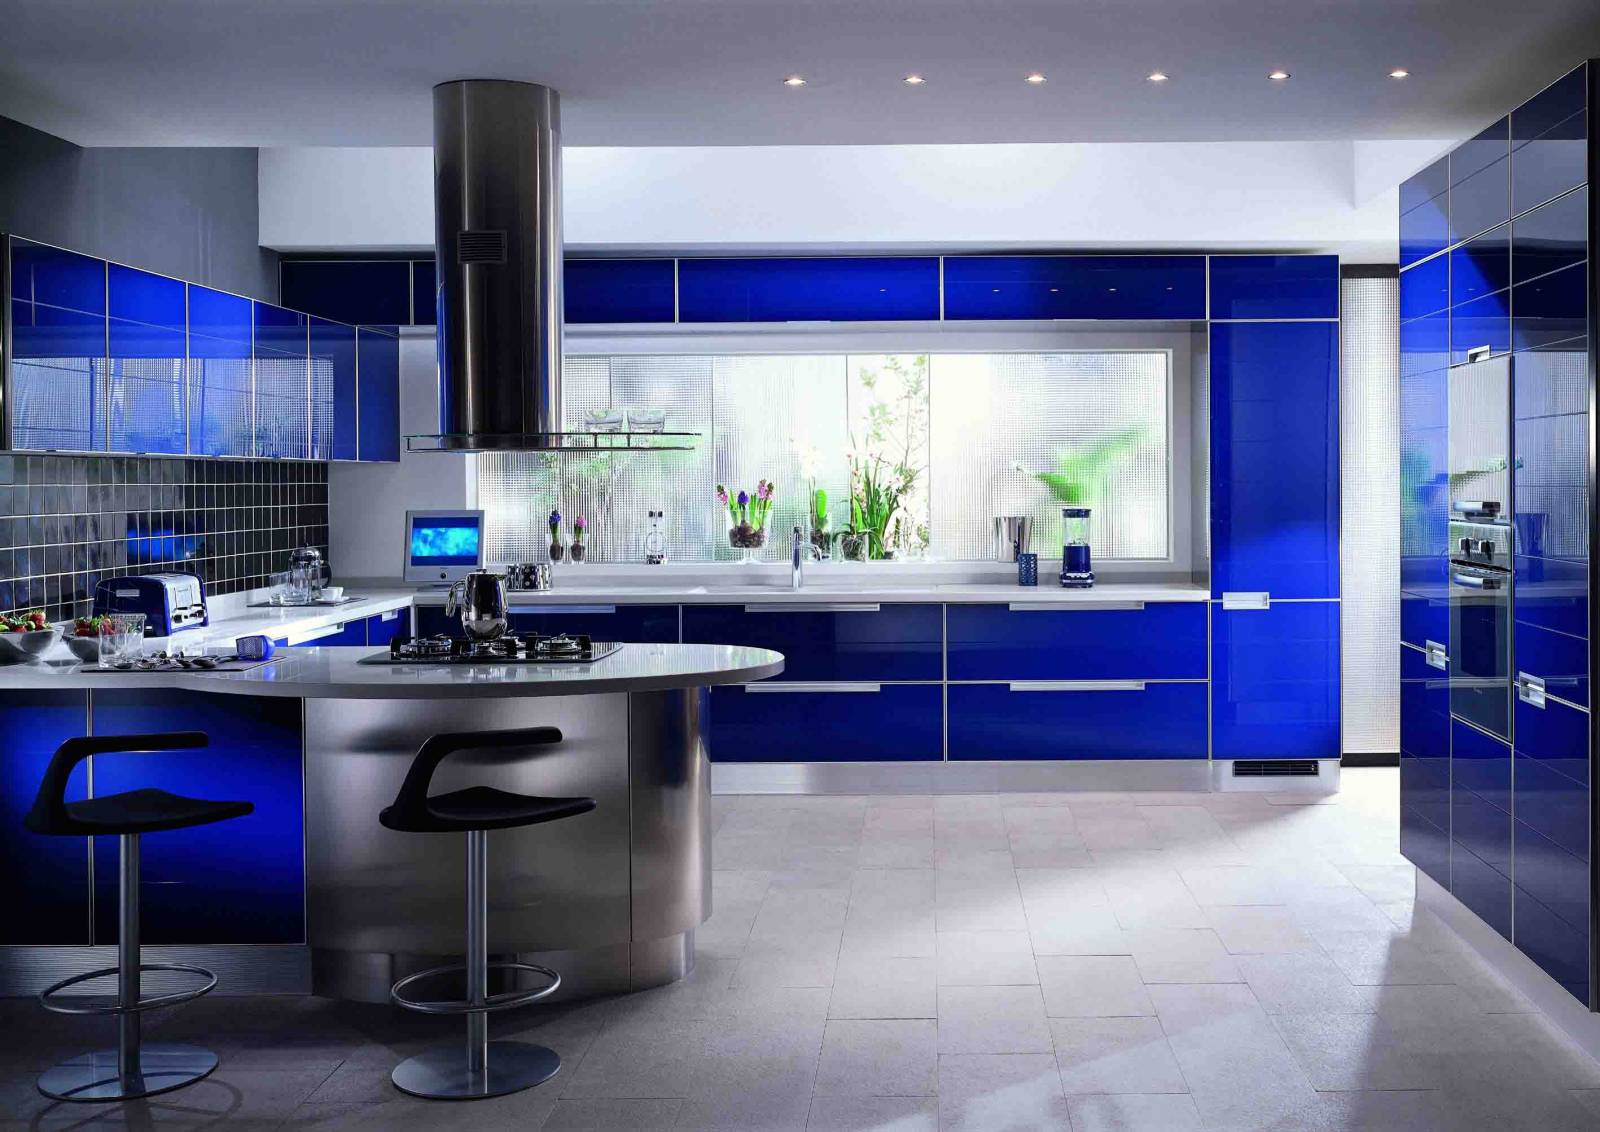 Какие красивые кухни. Кухни в стиле Модерн и хайтек. Кухня в синем цвете. Кухня в синих тонах. Синий кухонный гарнитур.